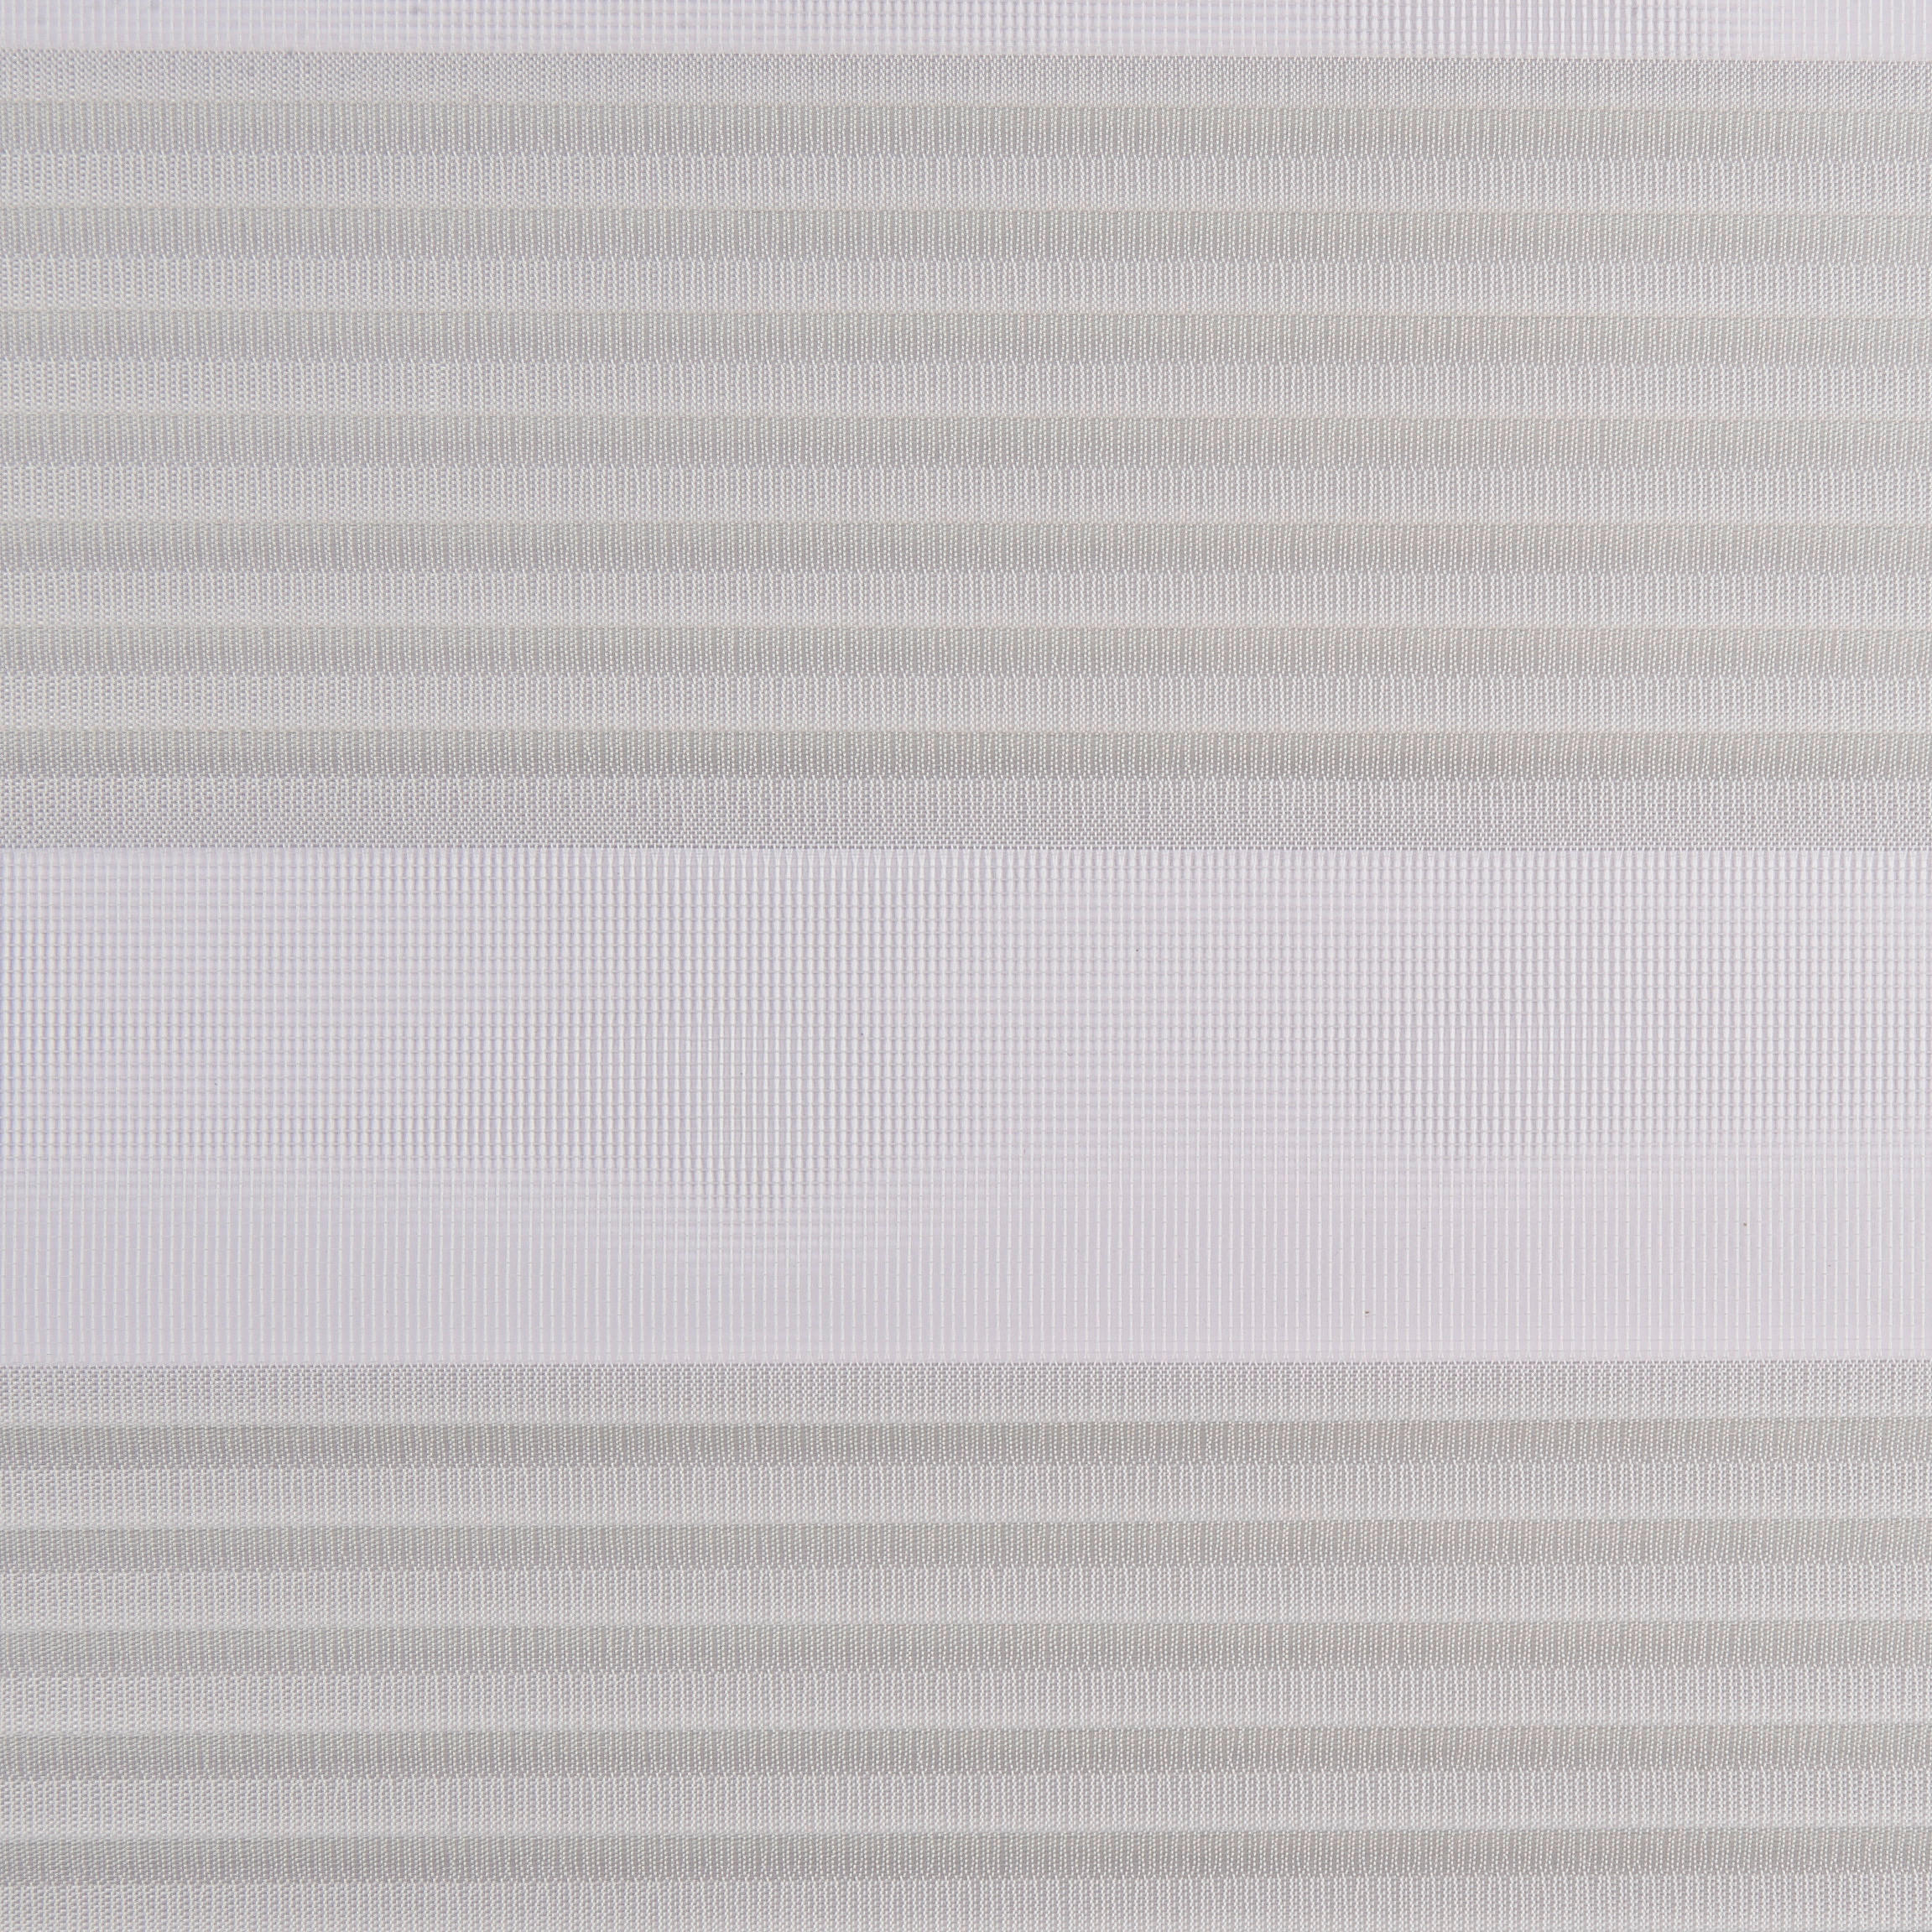 Schiebevorhang Timba weiß B/L: ca. 60x245 cm Timba - weiß (60,00/245,00cm) - POCOline